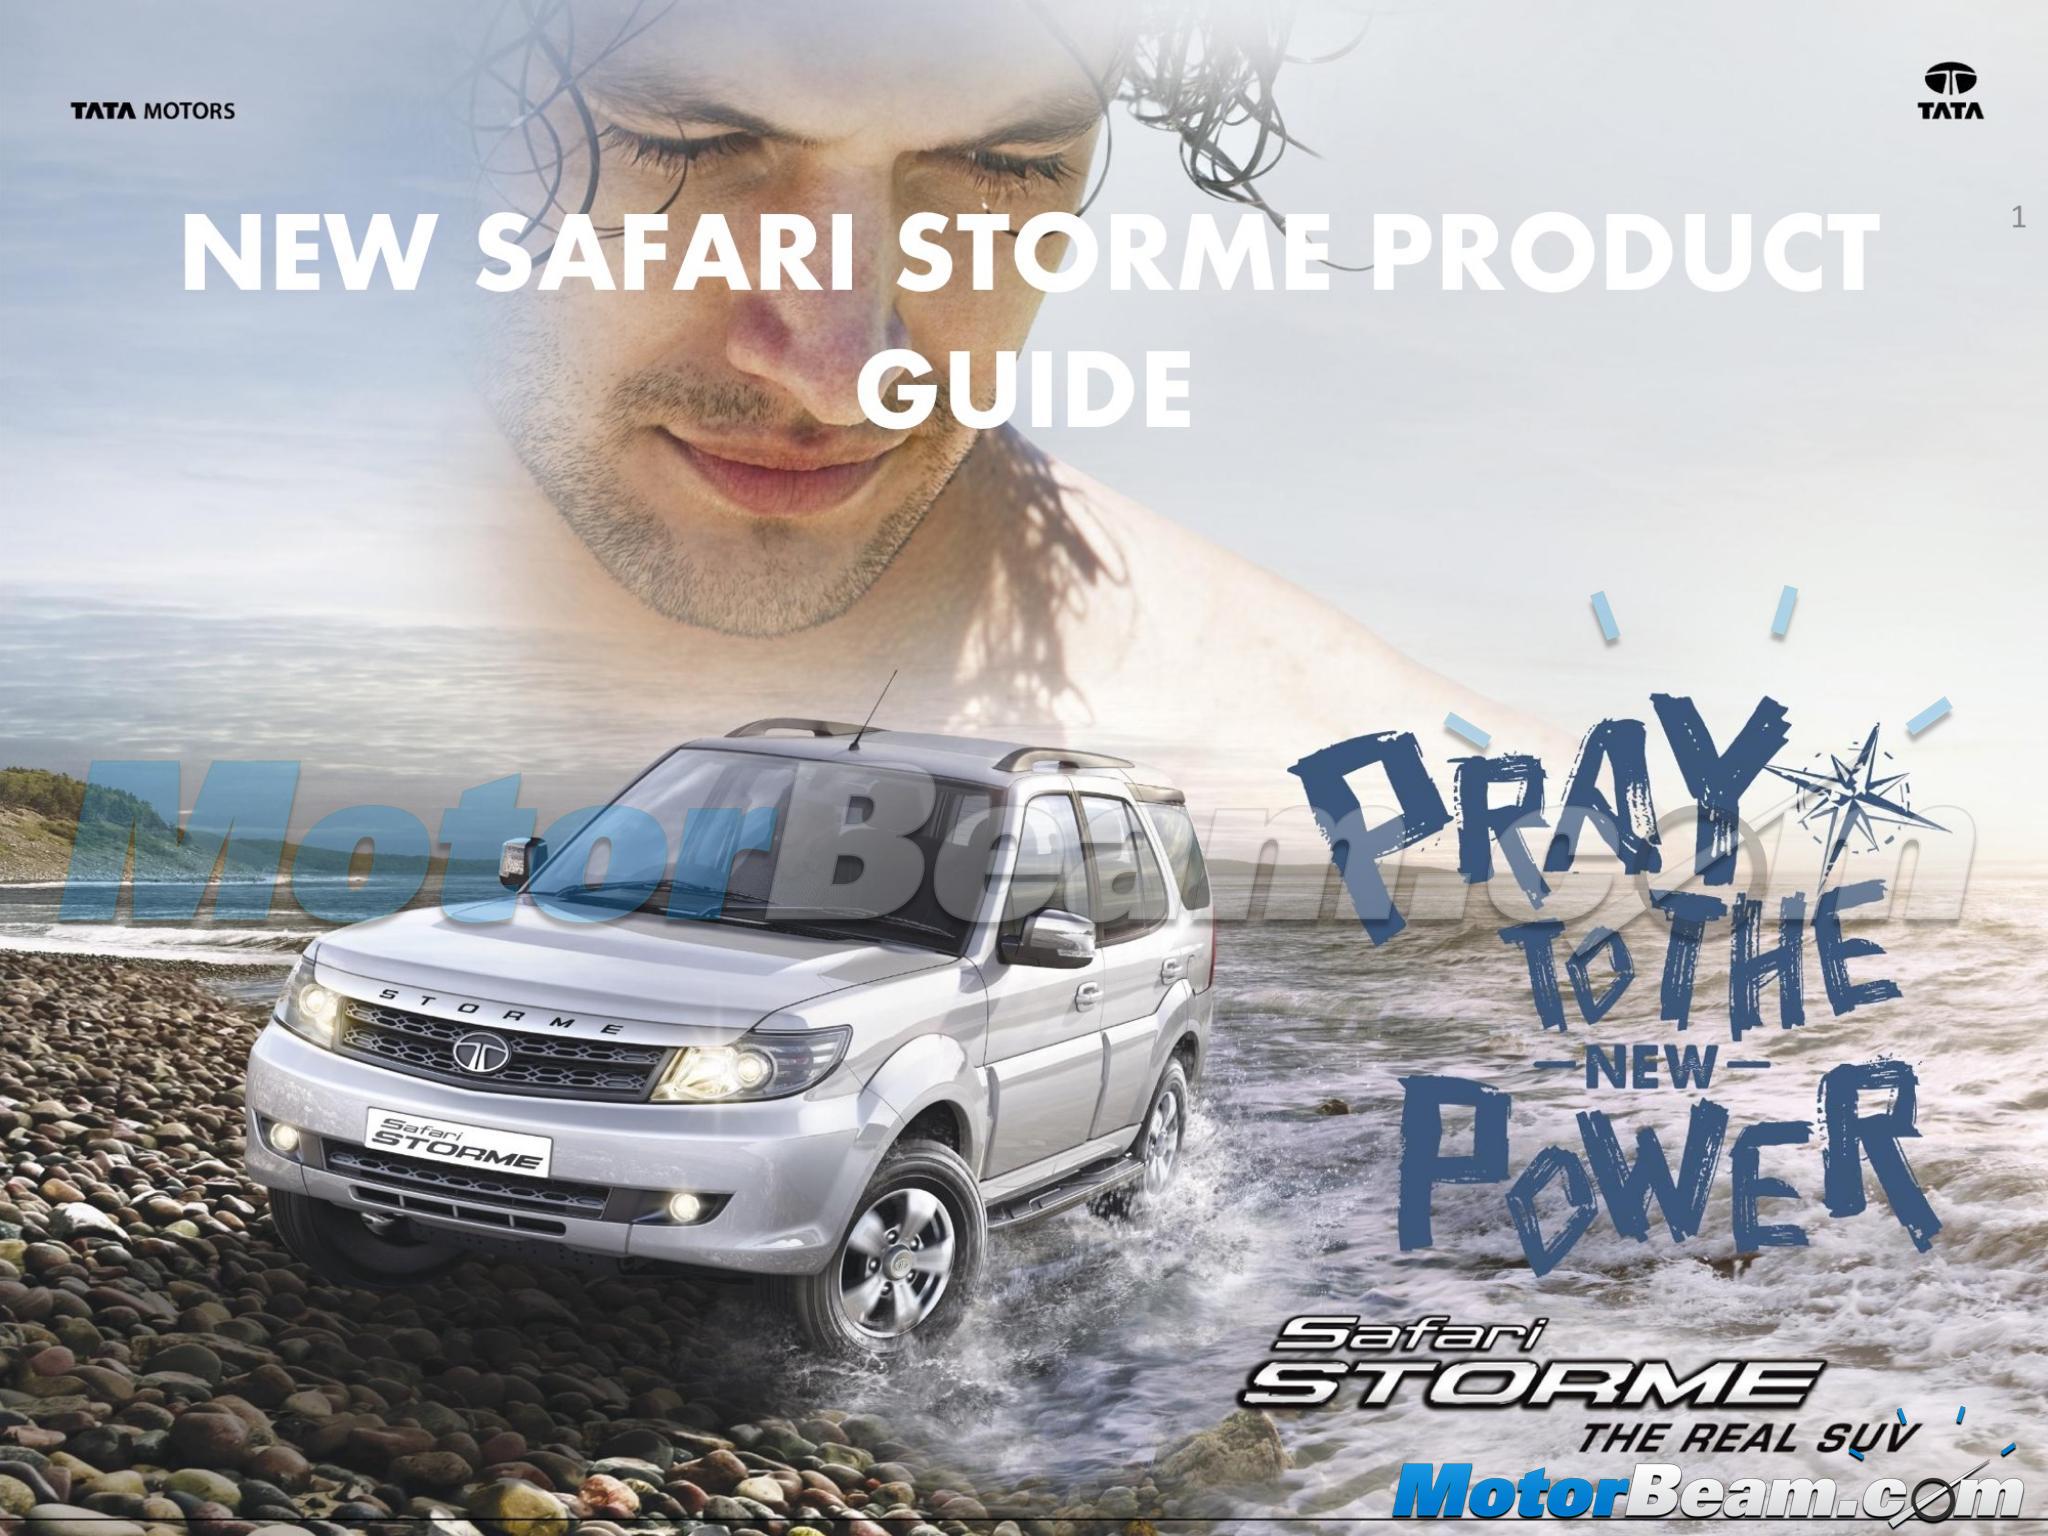 2015 Tata Safari Storme Product Guide